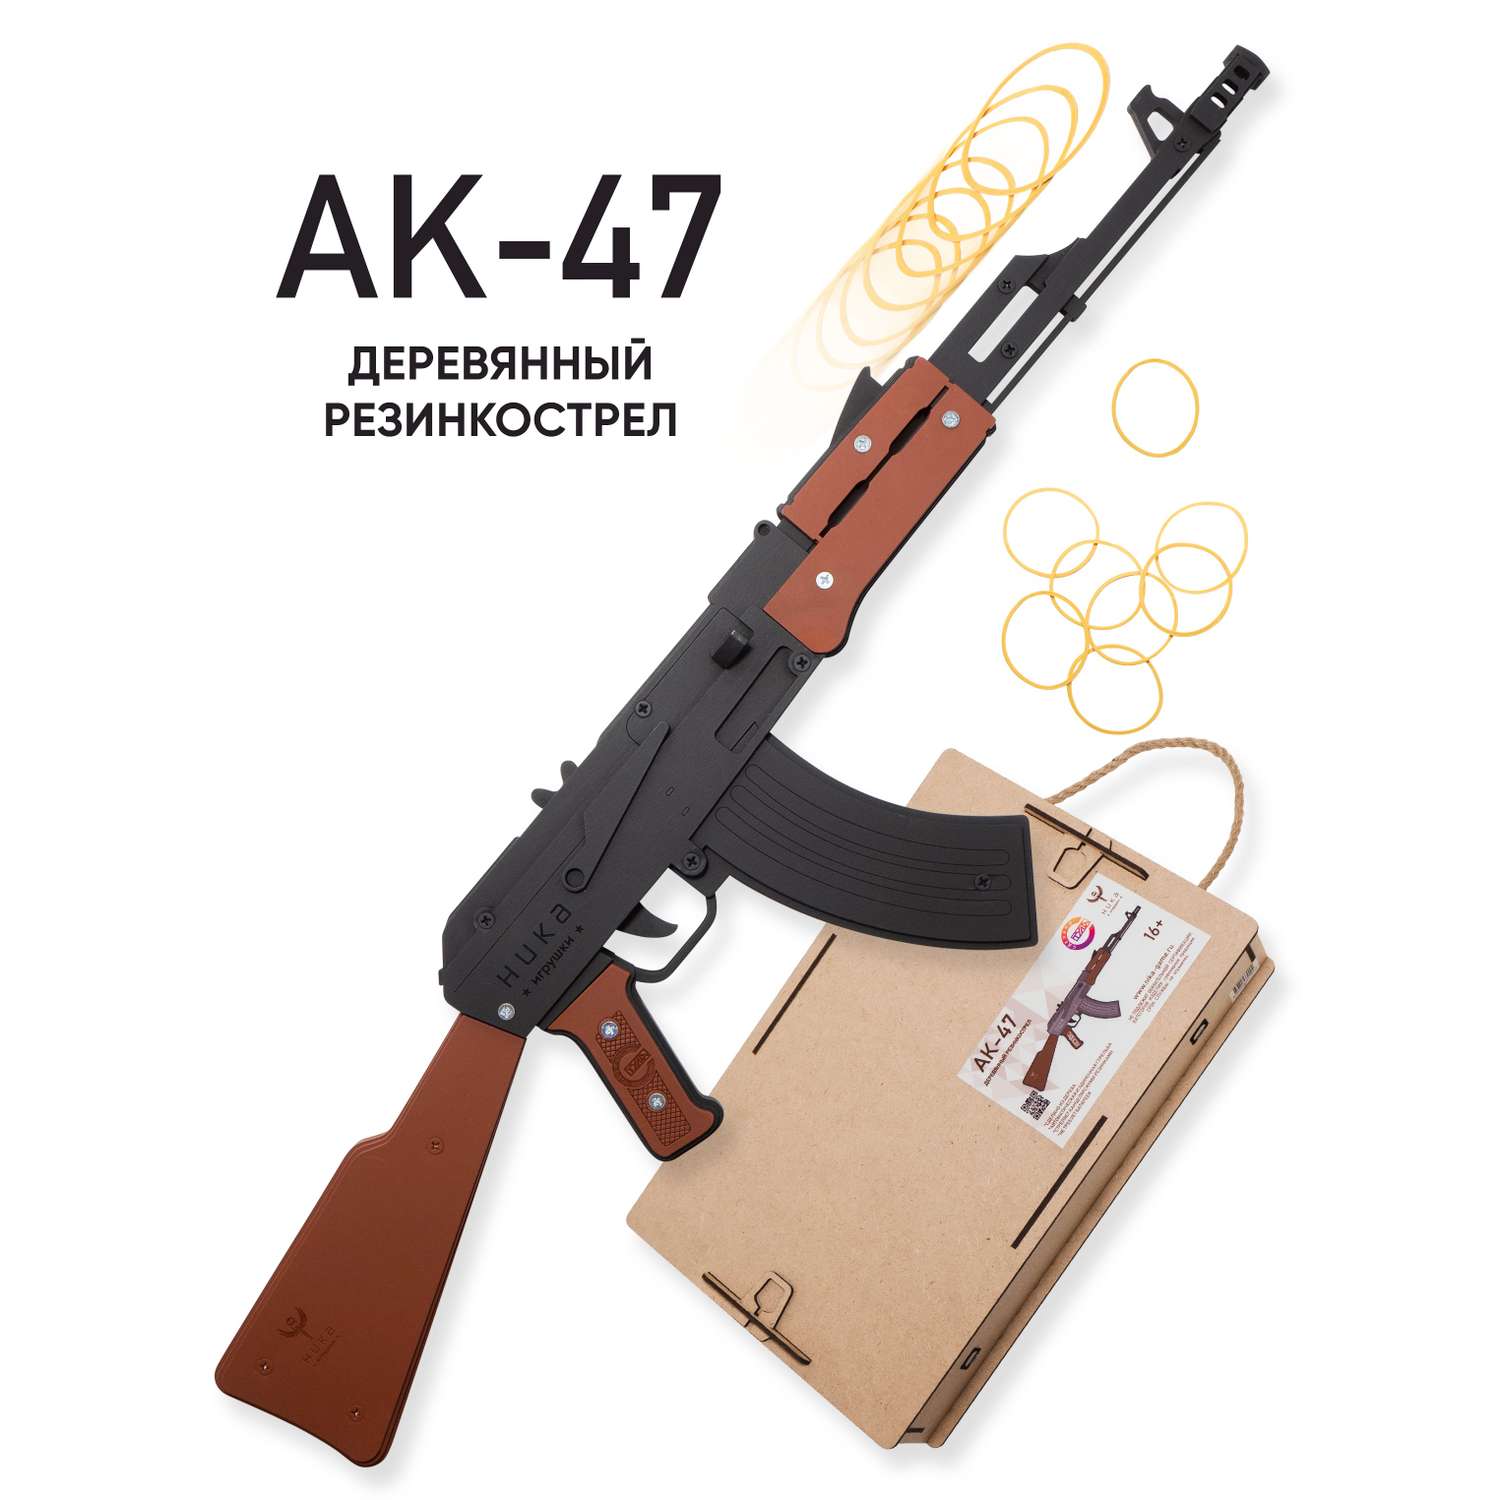 Резинкострел НИКА игрушки Автомат АК-47 в подарочной упаковке - фото 1